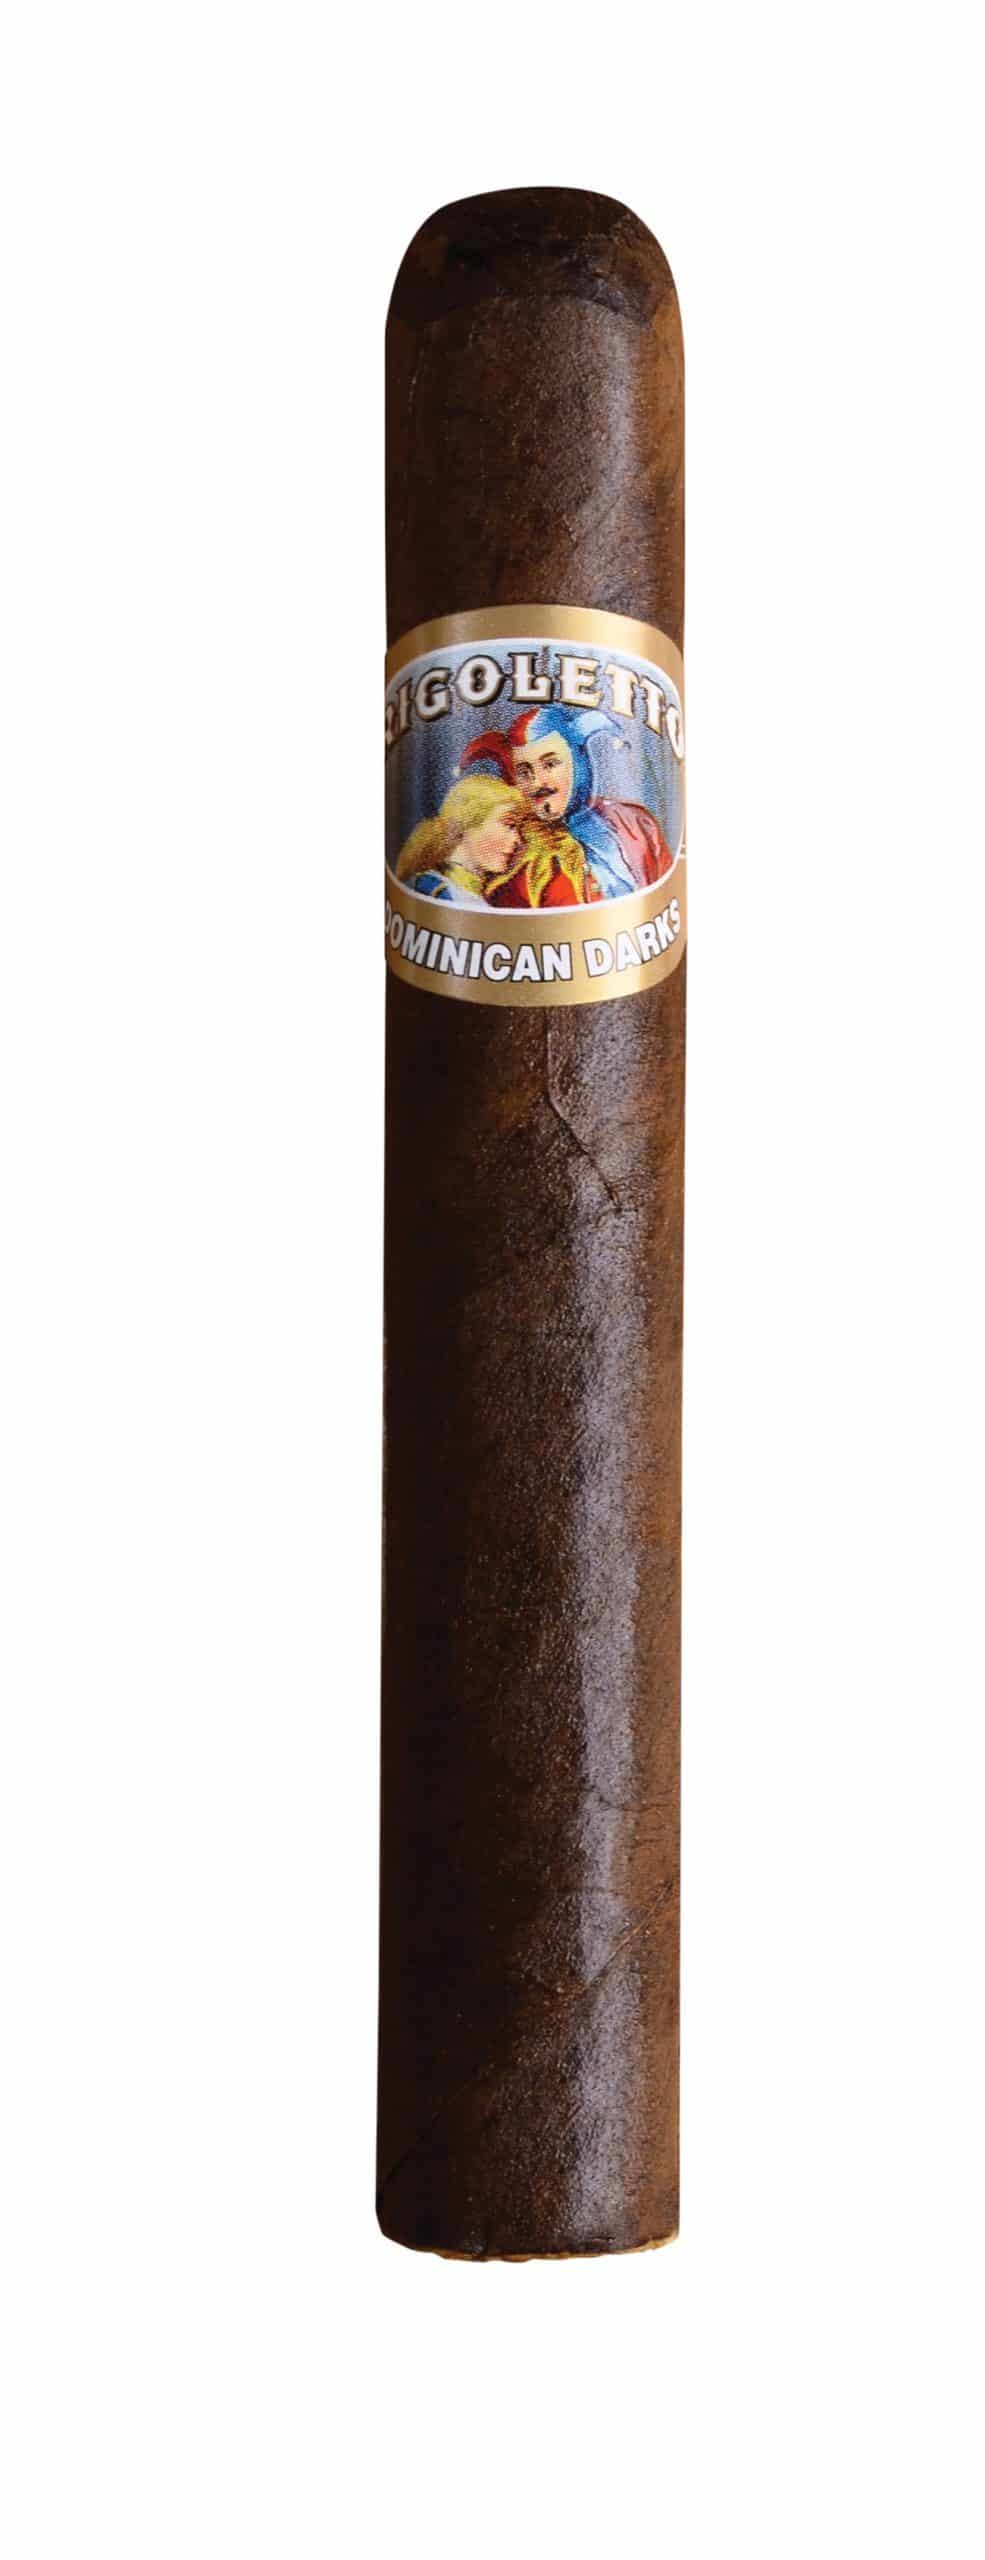 rigoletto dominican darks single cigar